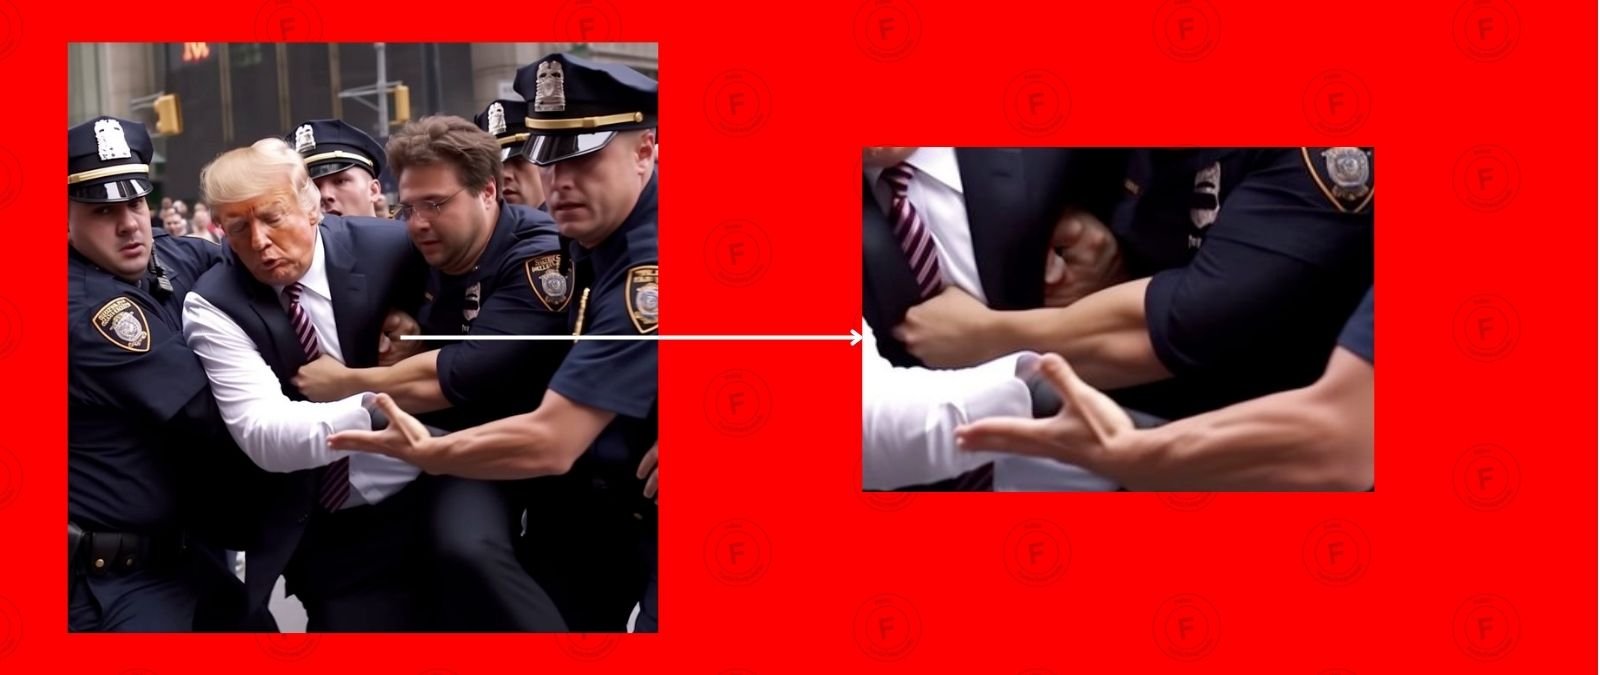 Son falsas las fotos de Donald Trump siendo arrestado, son imágenes creadas con inteligencia artificial